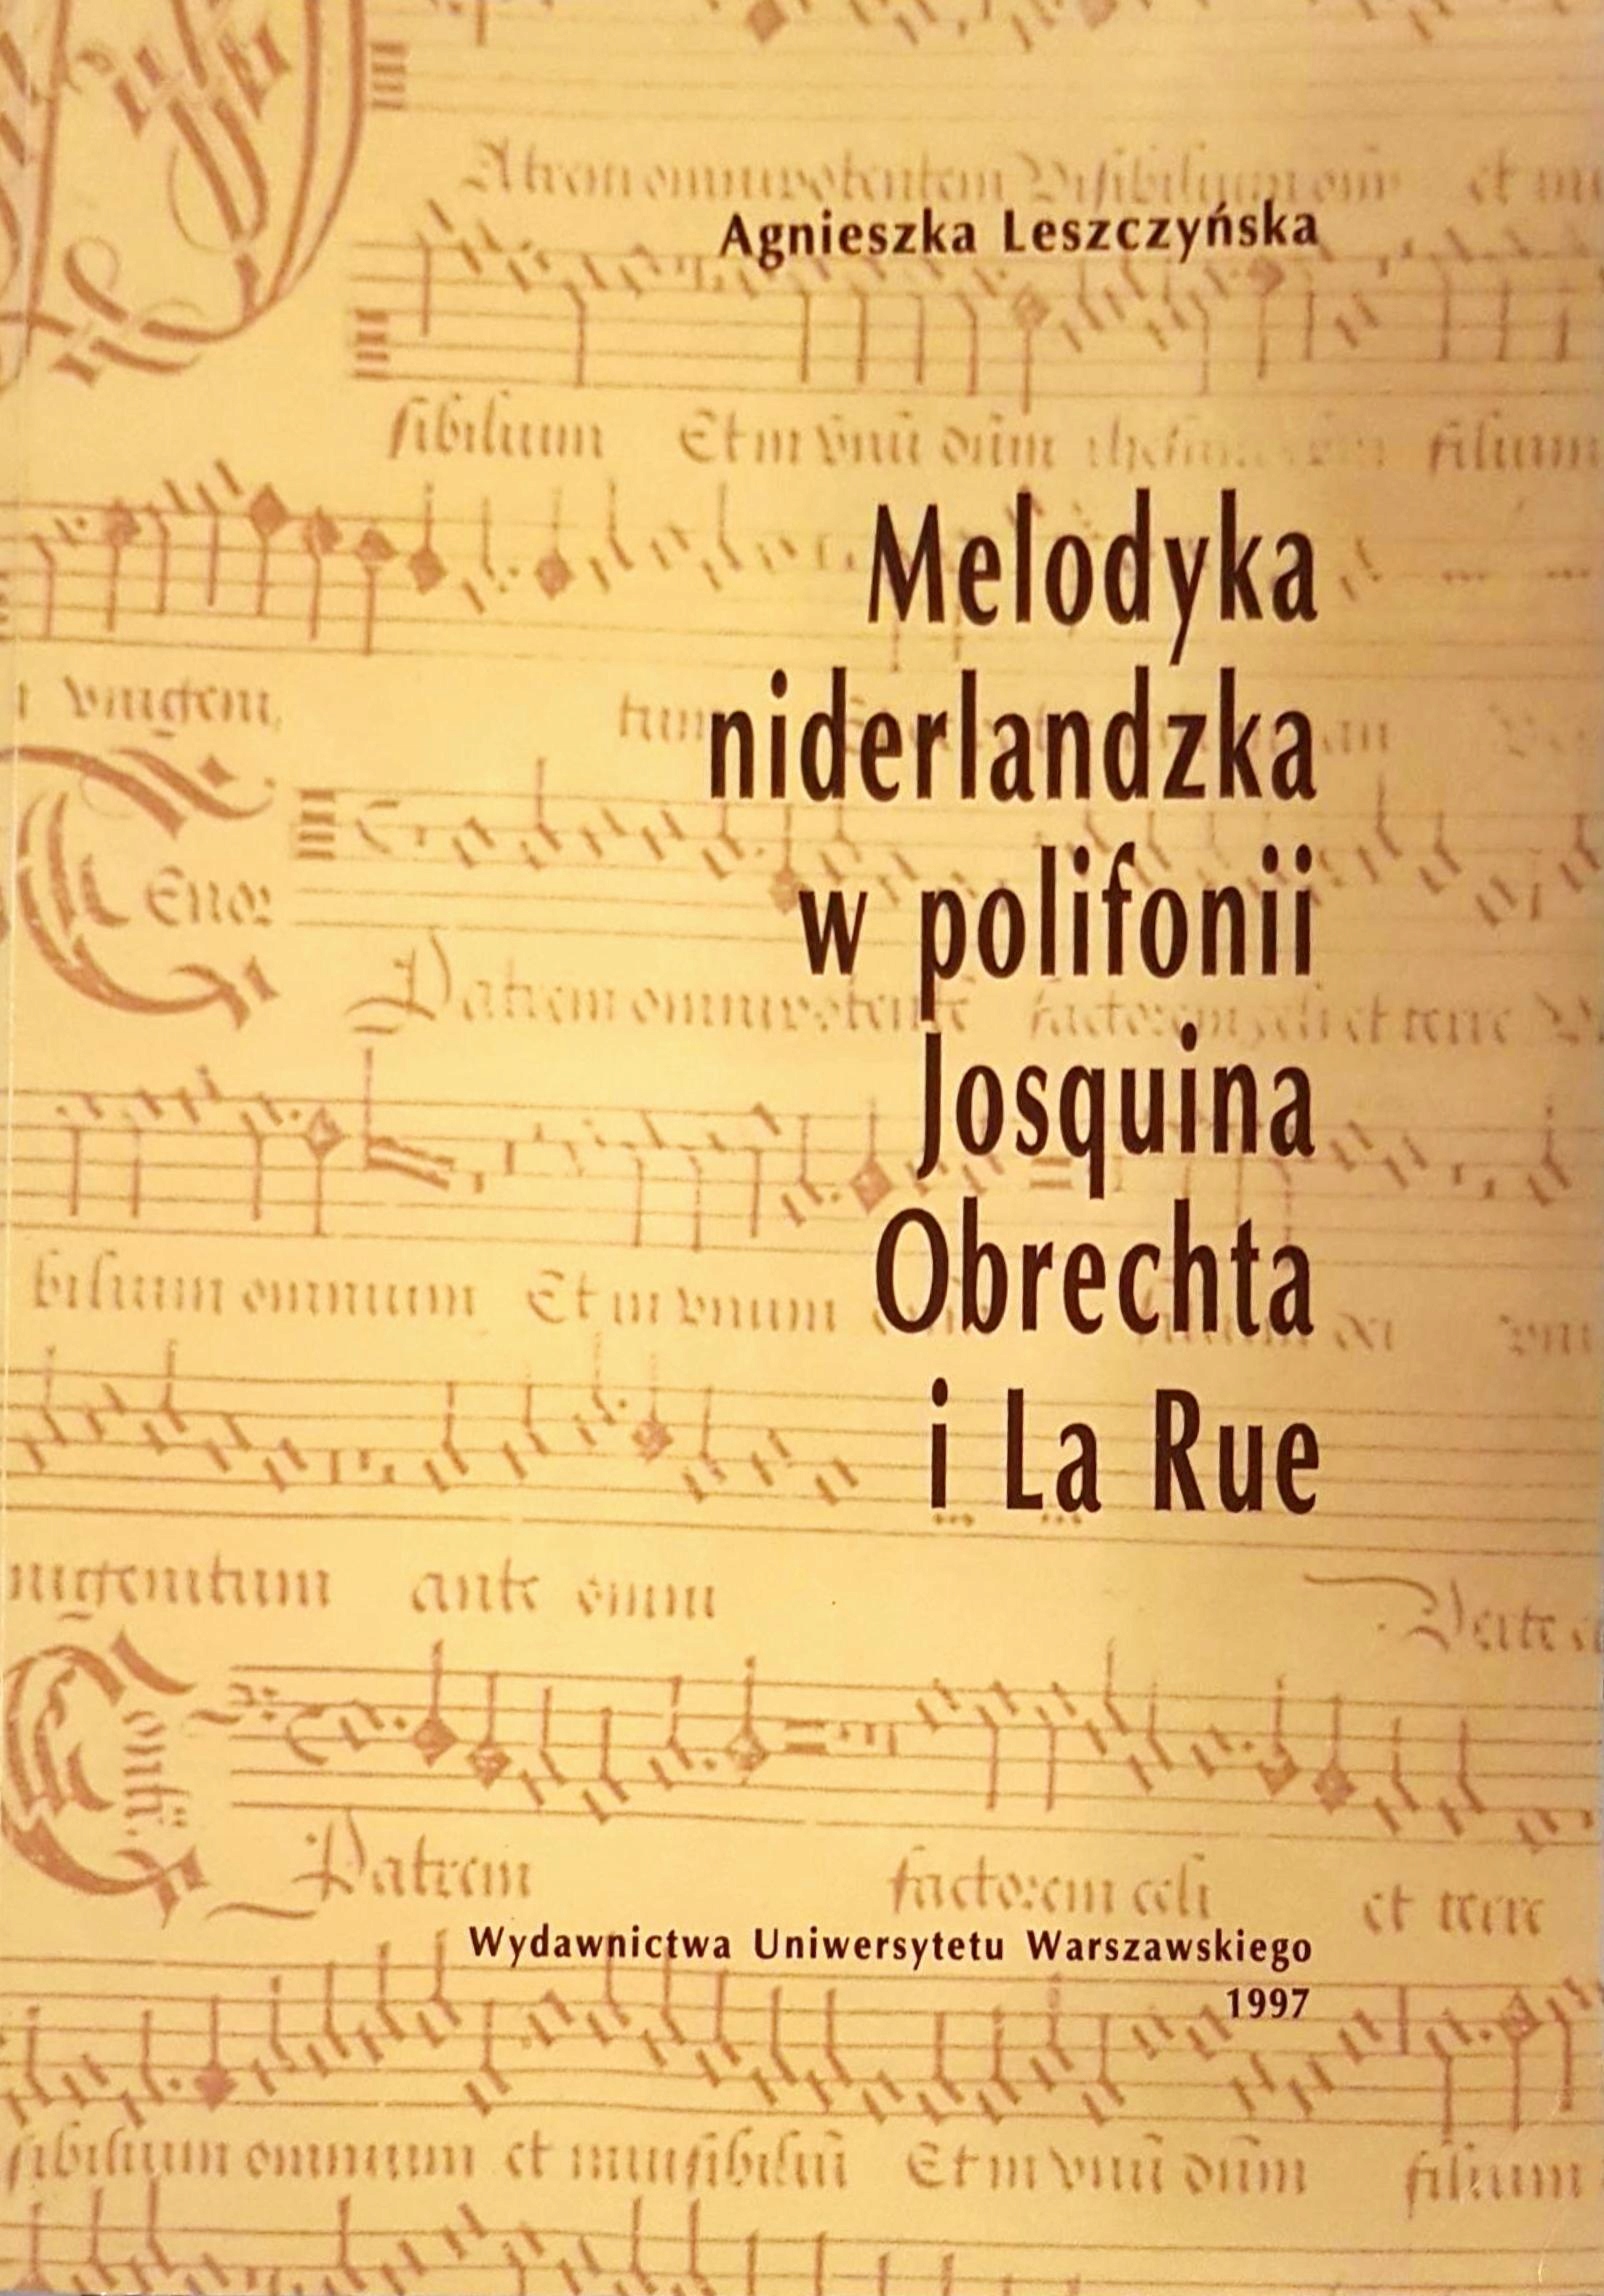 Agnieszka Leszczyńska: Melodyka niderlandzka w polifonii Josquina, Obrechta i La Rue, Warszawa 1997